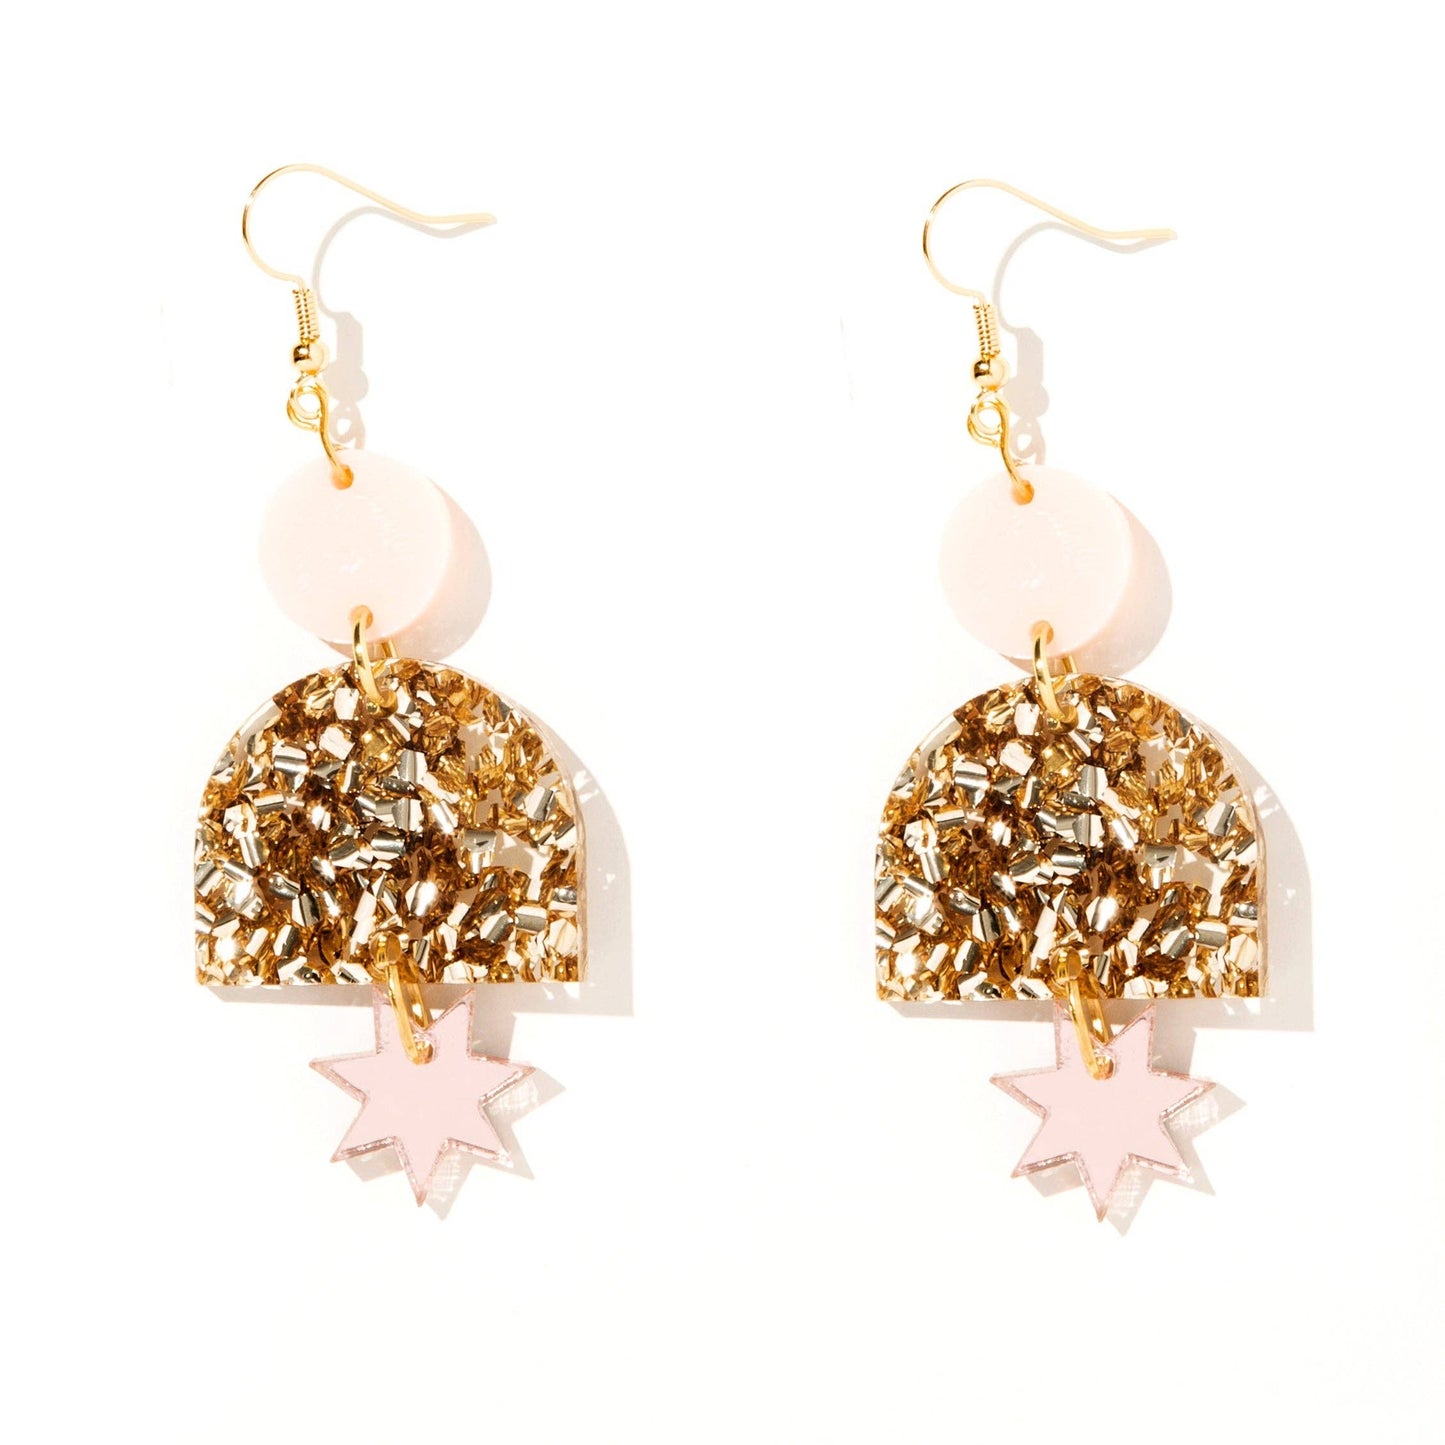 Emeldo- Alexa Earrings // Pale Pink, Chunky Gold Glitter + Rose Gold